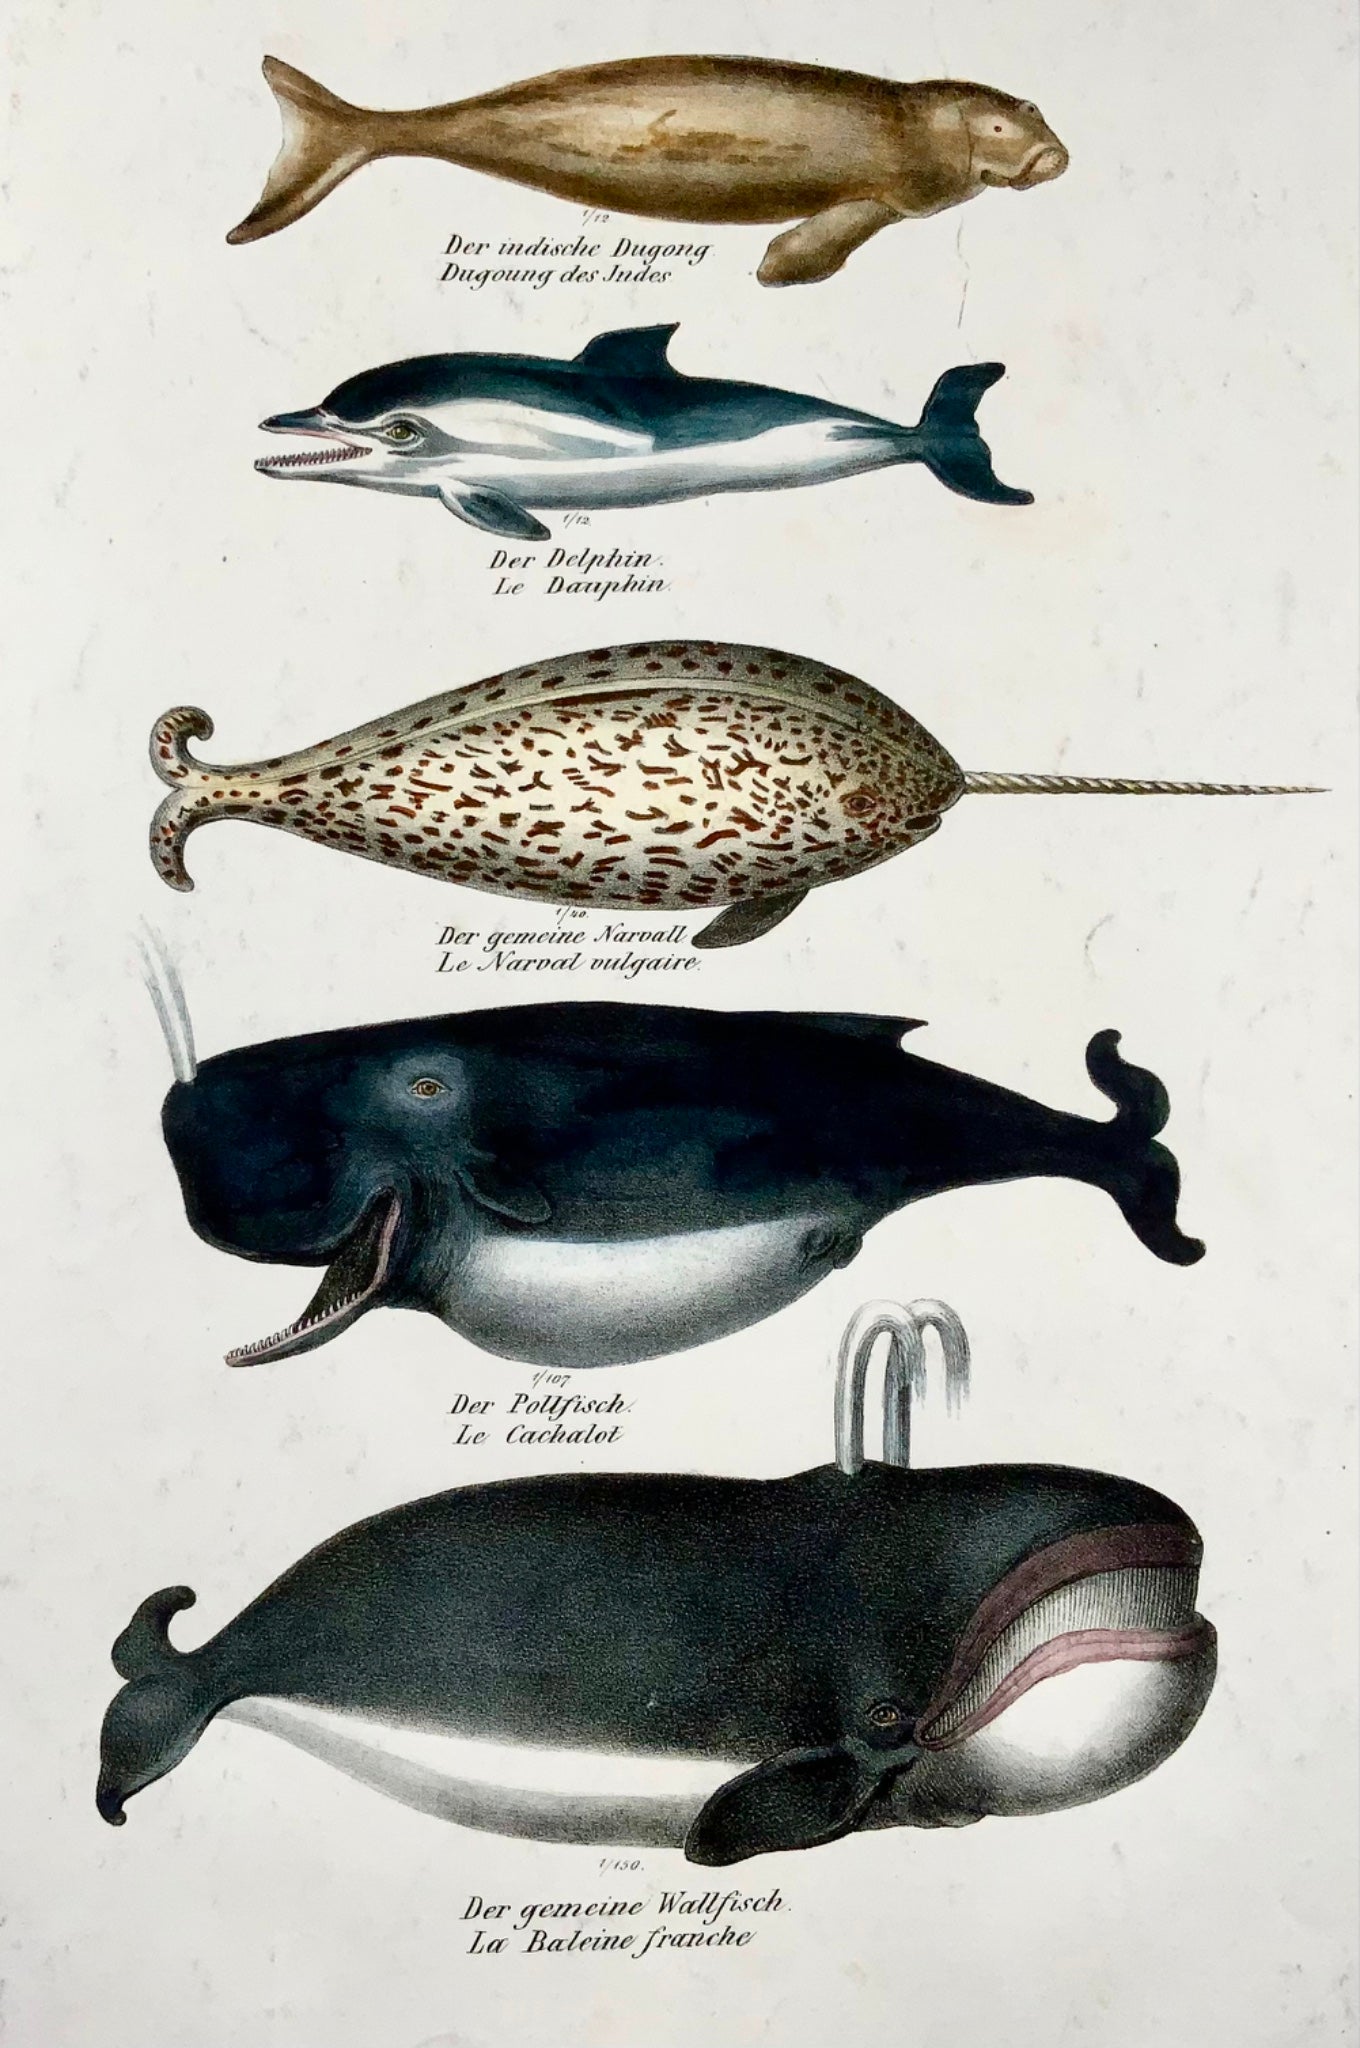 1824 Dauphins, baleines, mammifères, KJ Brodtmann, lithographie in-folio coloriée à la main